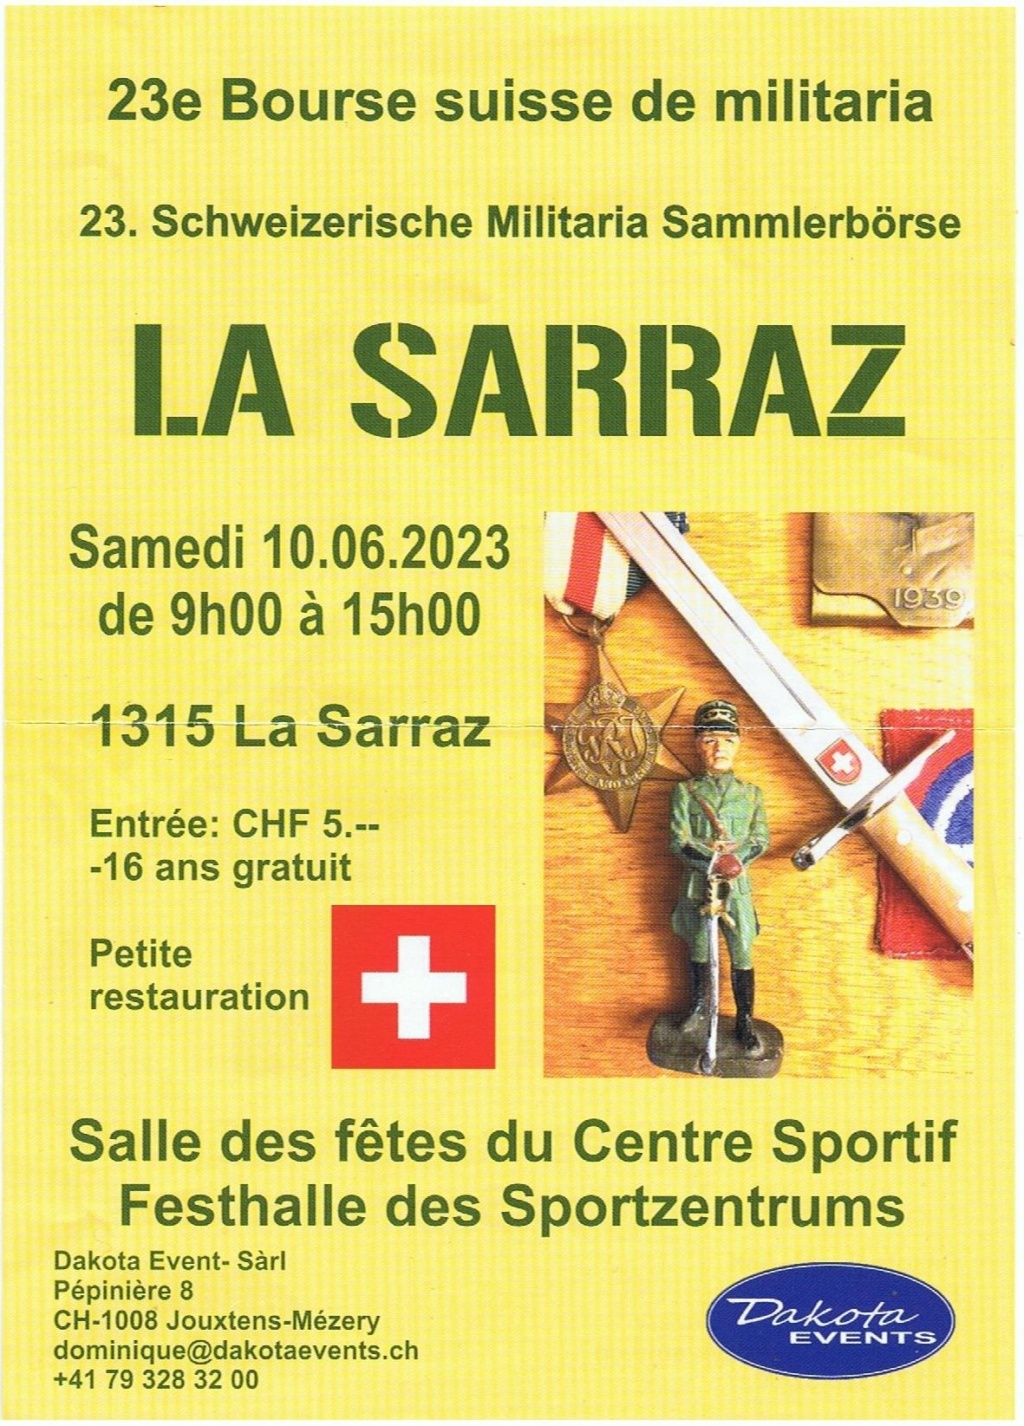 23e Bourse suisse de militaria 10.06.2023 La Sarraz. Milita10